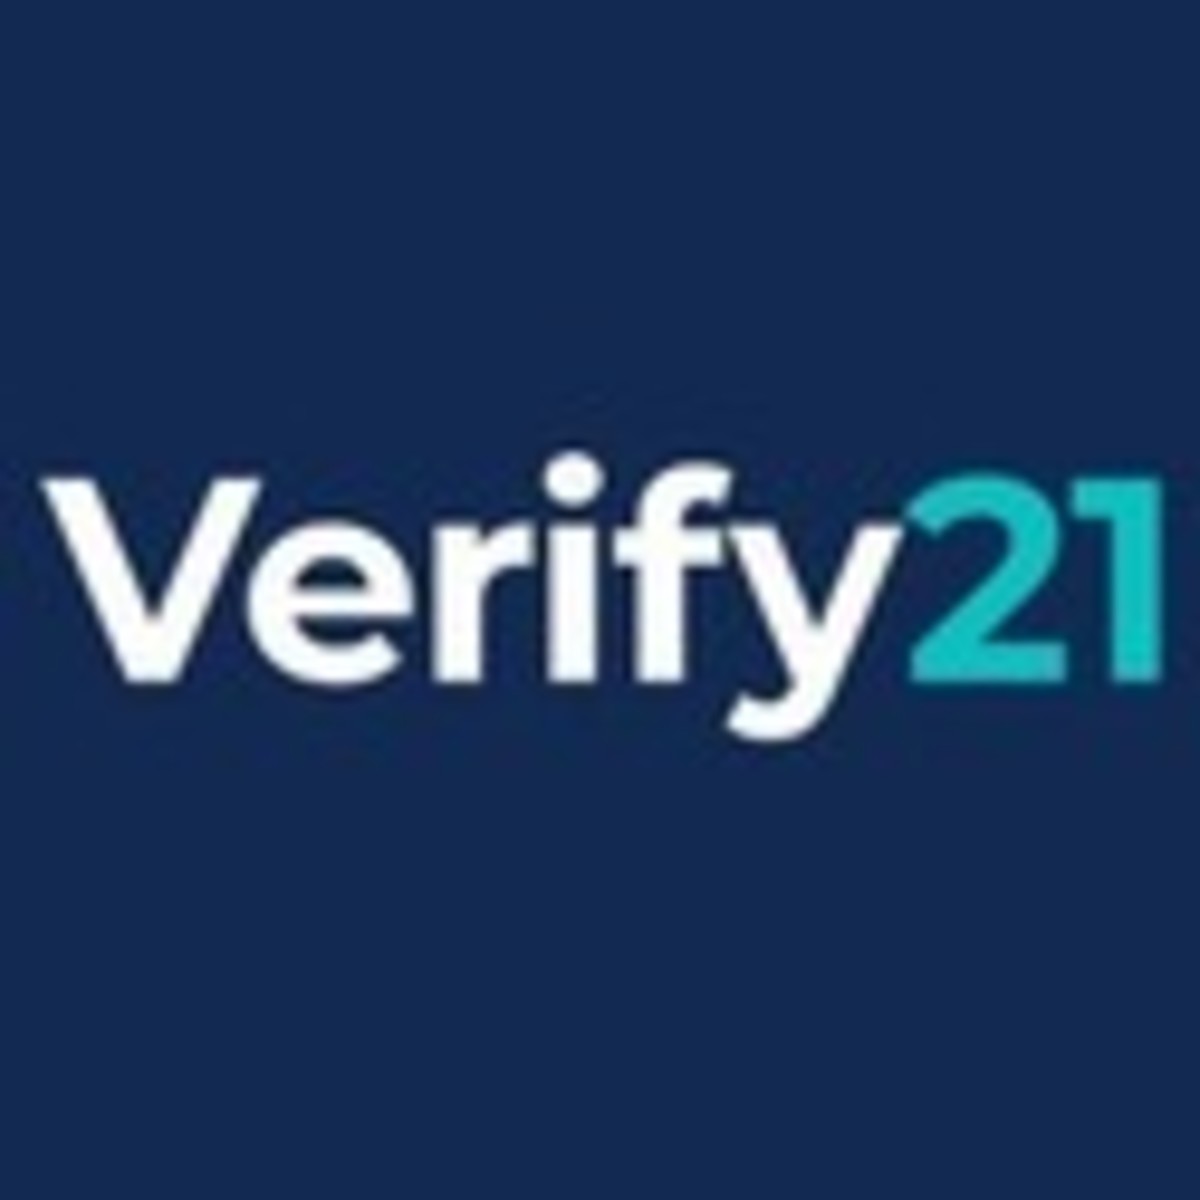 Verify 21